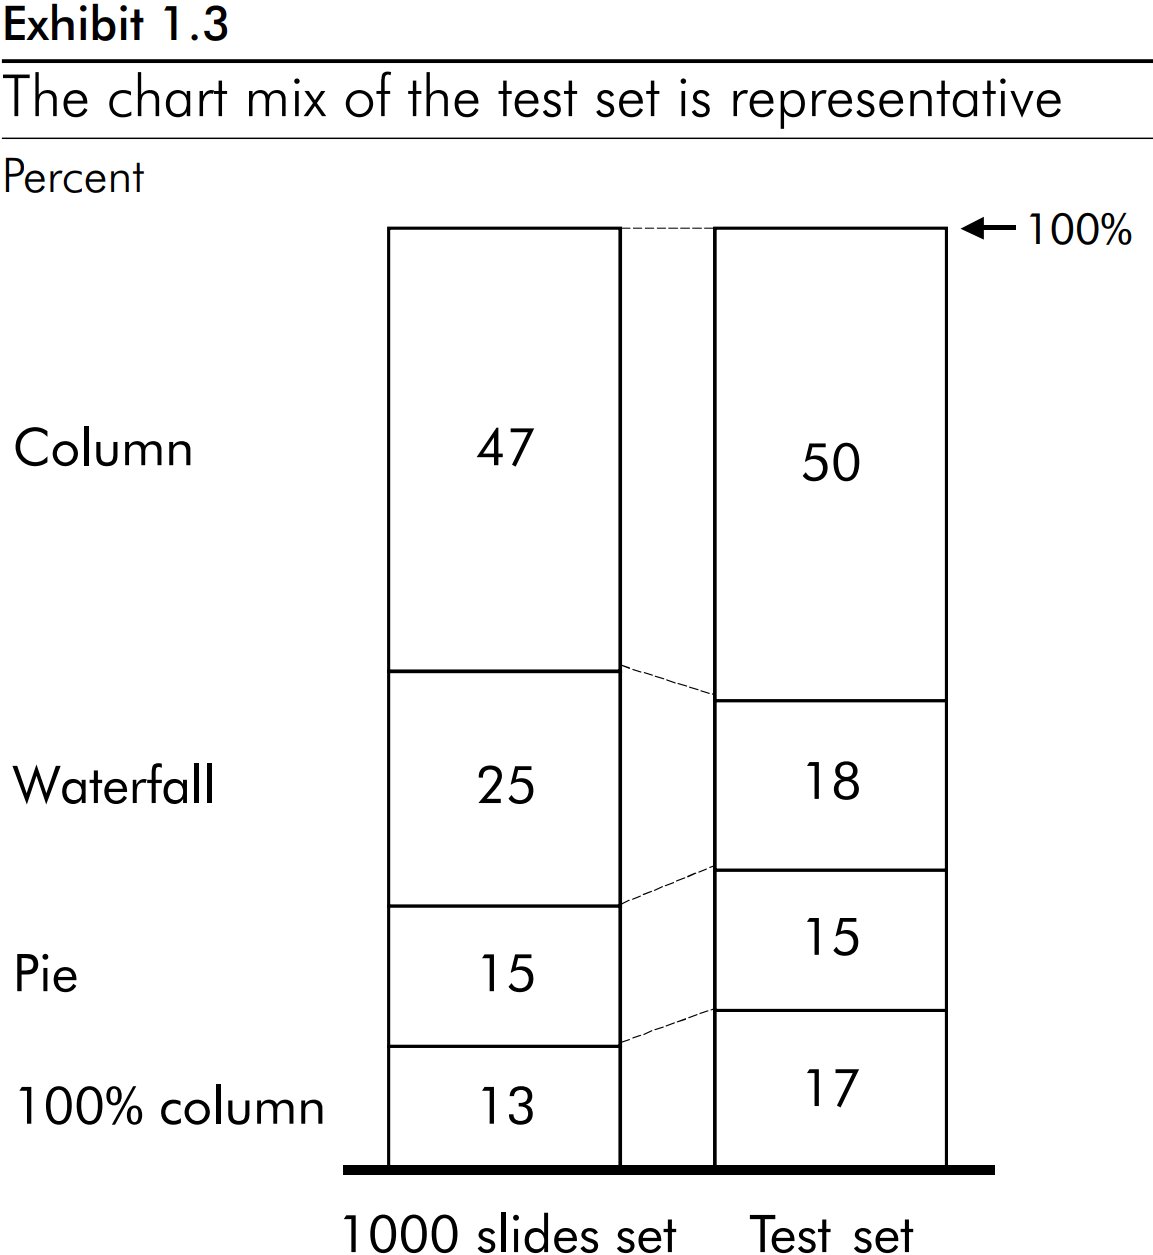 Гистограмма с накоплением, которая доказывает репрезентативность состава диаграмм в тестовой выборке.